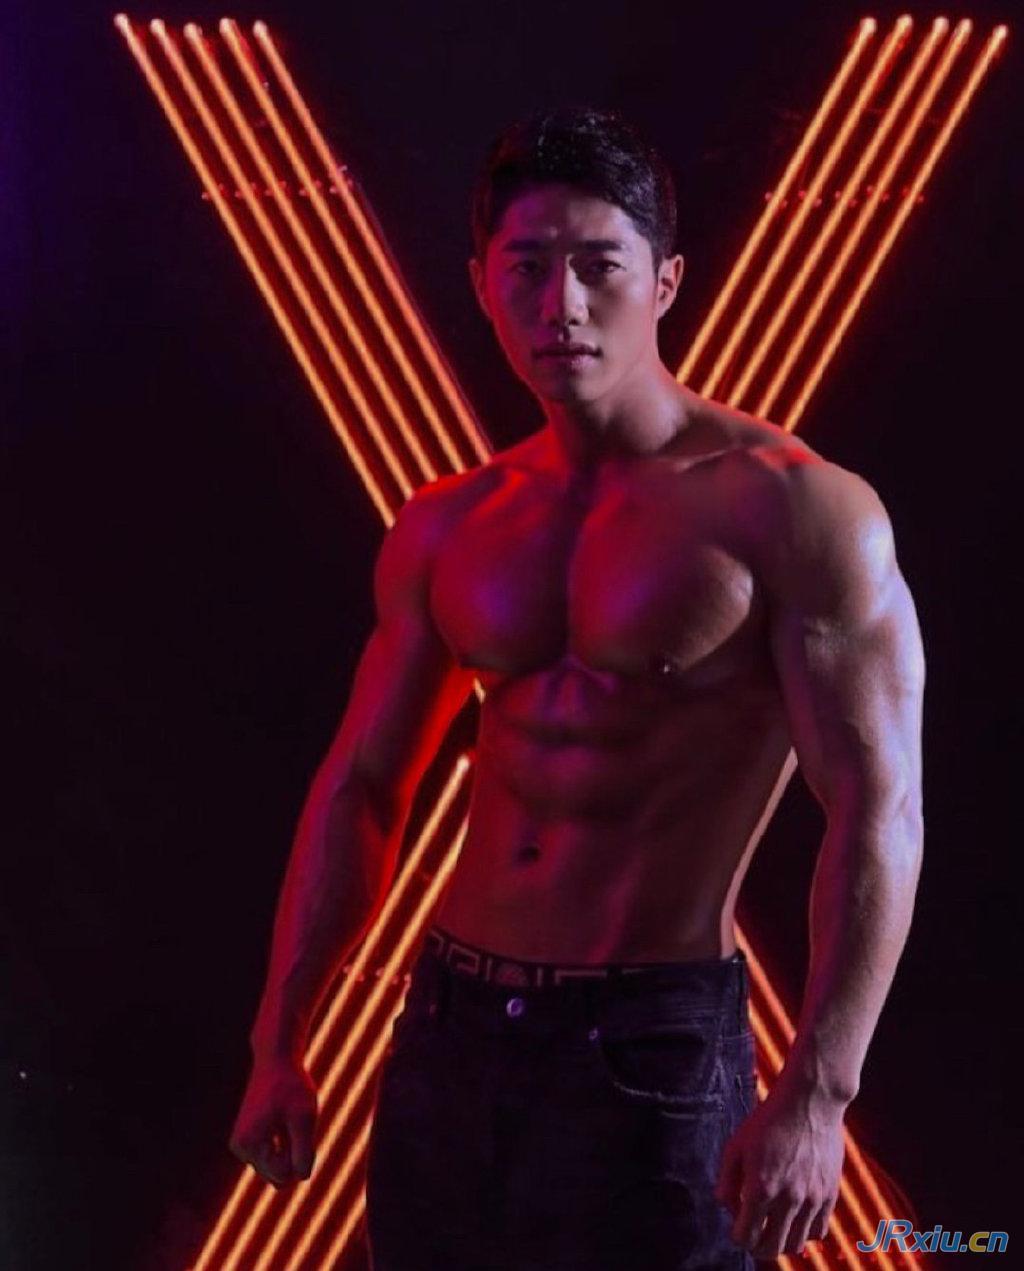 韩国健美运动员肌肉帅哥健身男模juhwanpyo